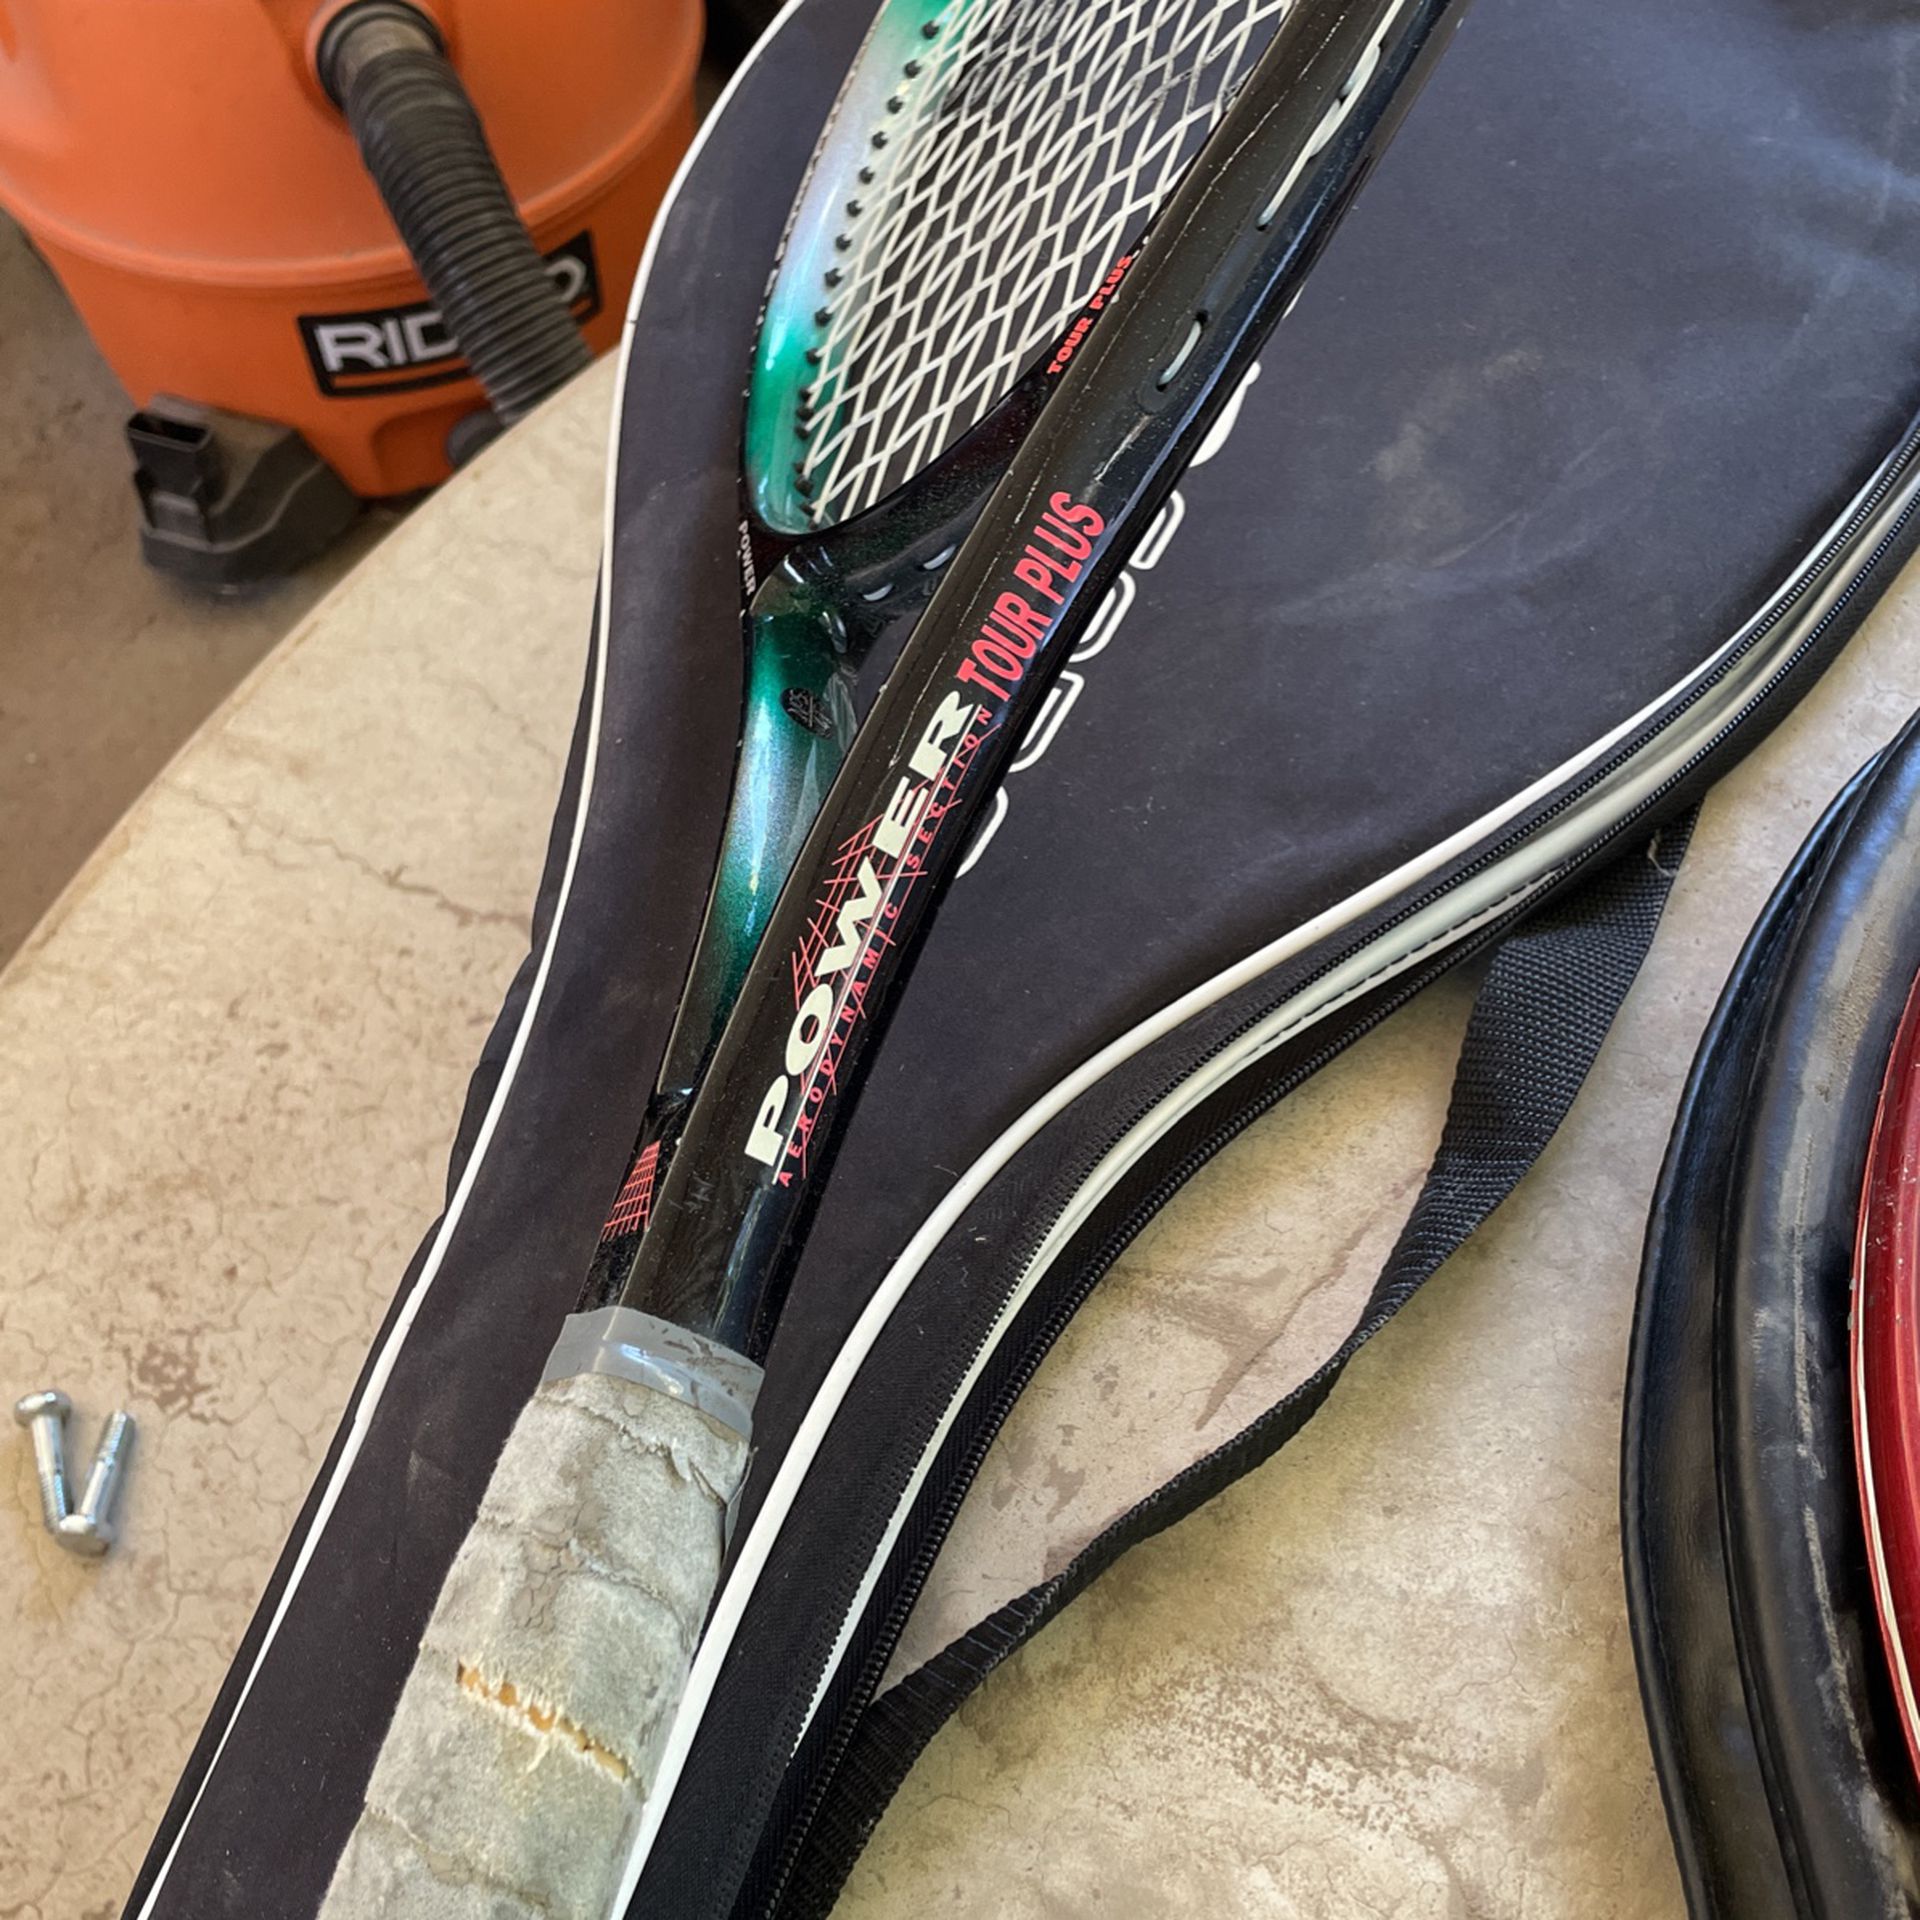 Tennis’s Rackets